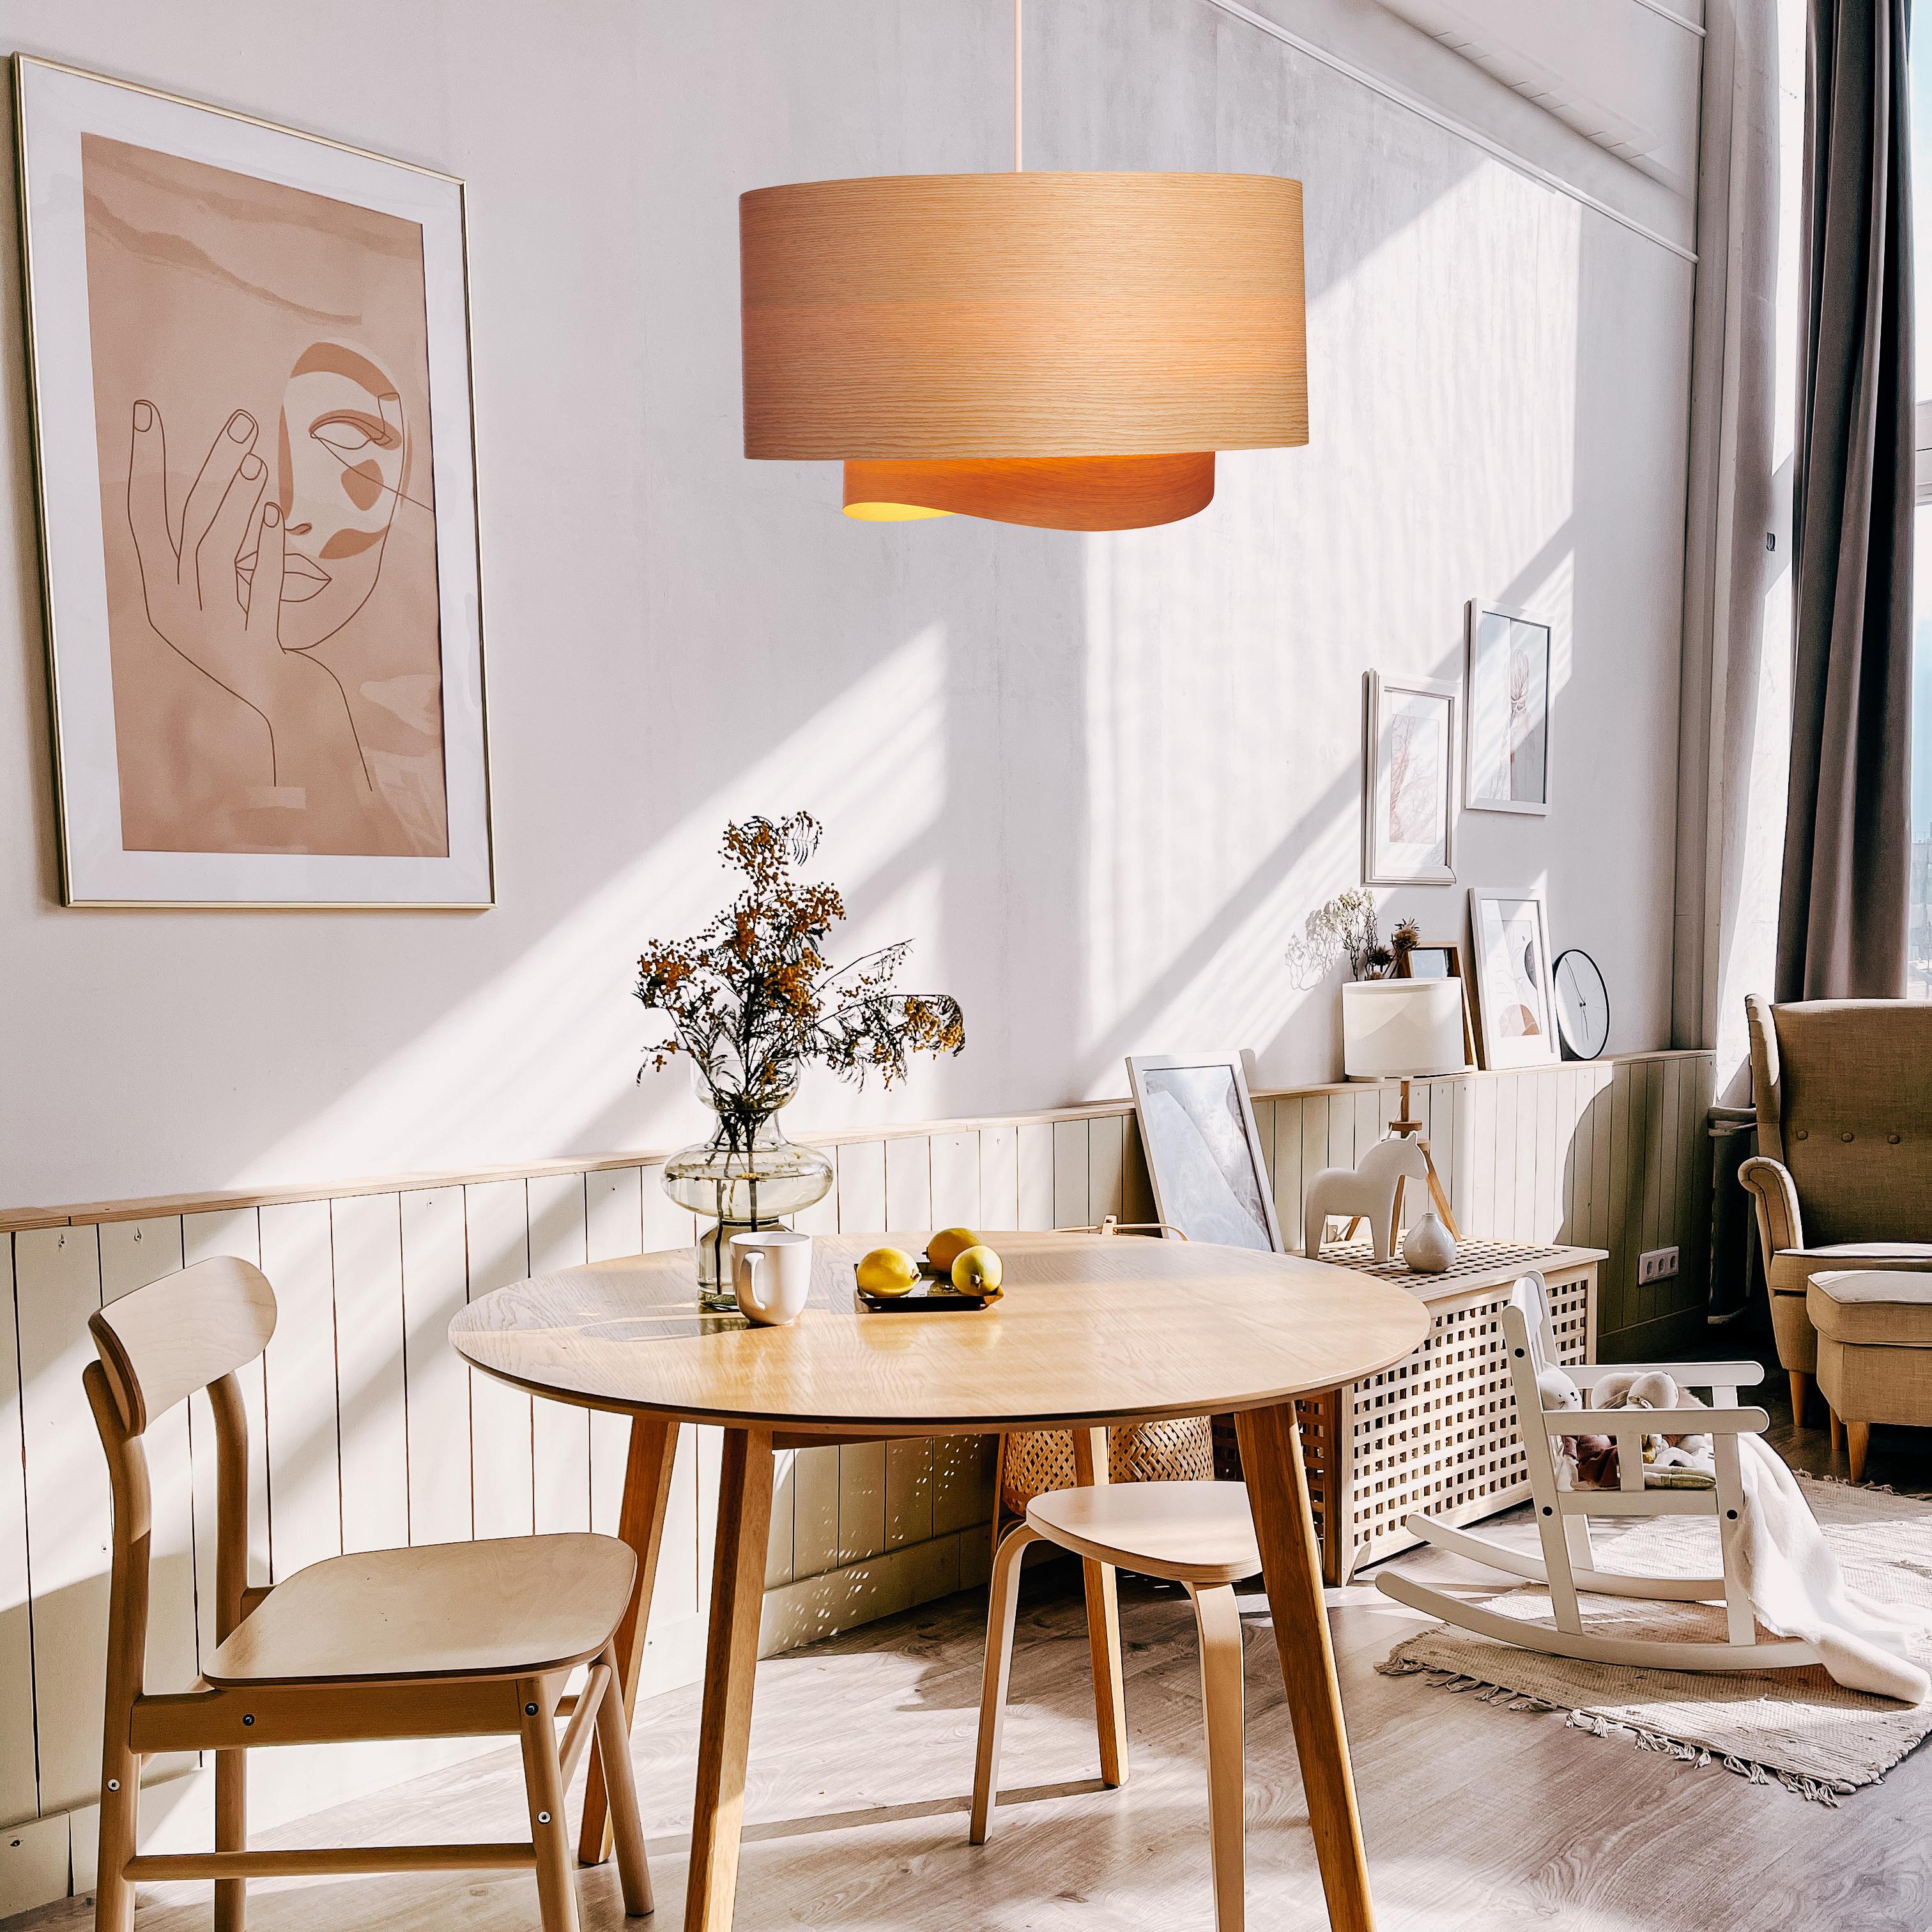 Die Pendelleuchte Half BOWEN ist eine atemberaubende, zeitgenössische Mid-Century Modern Leuchte mit skandinavischer Komposition und natürlicher Holzfurnierkonstruktion. Dieser minimalistische, luxuriöse Kronleuchter ist die perfekte Lösung, um